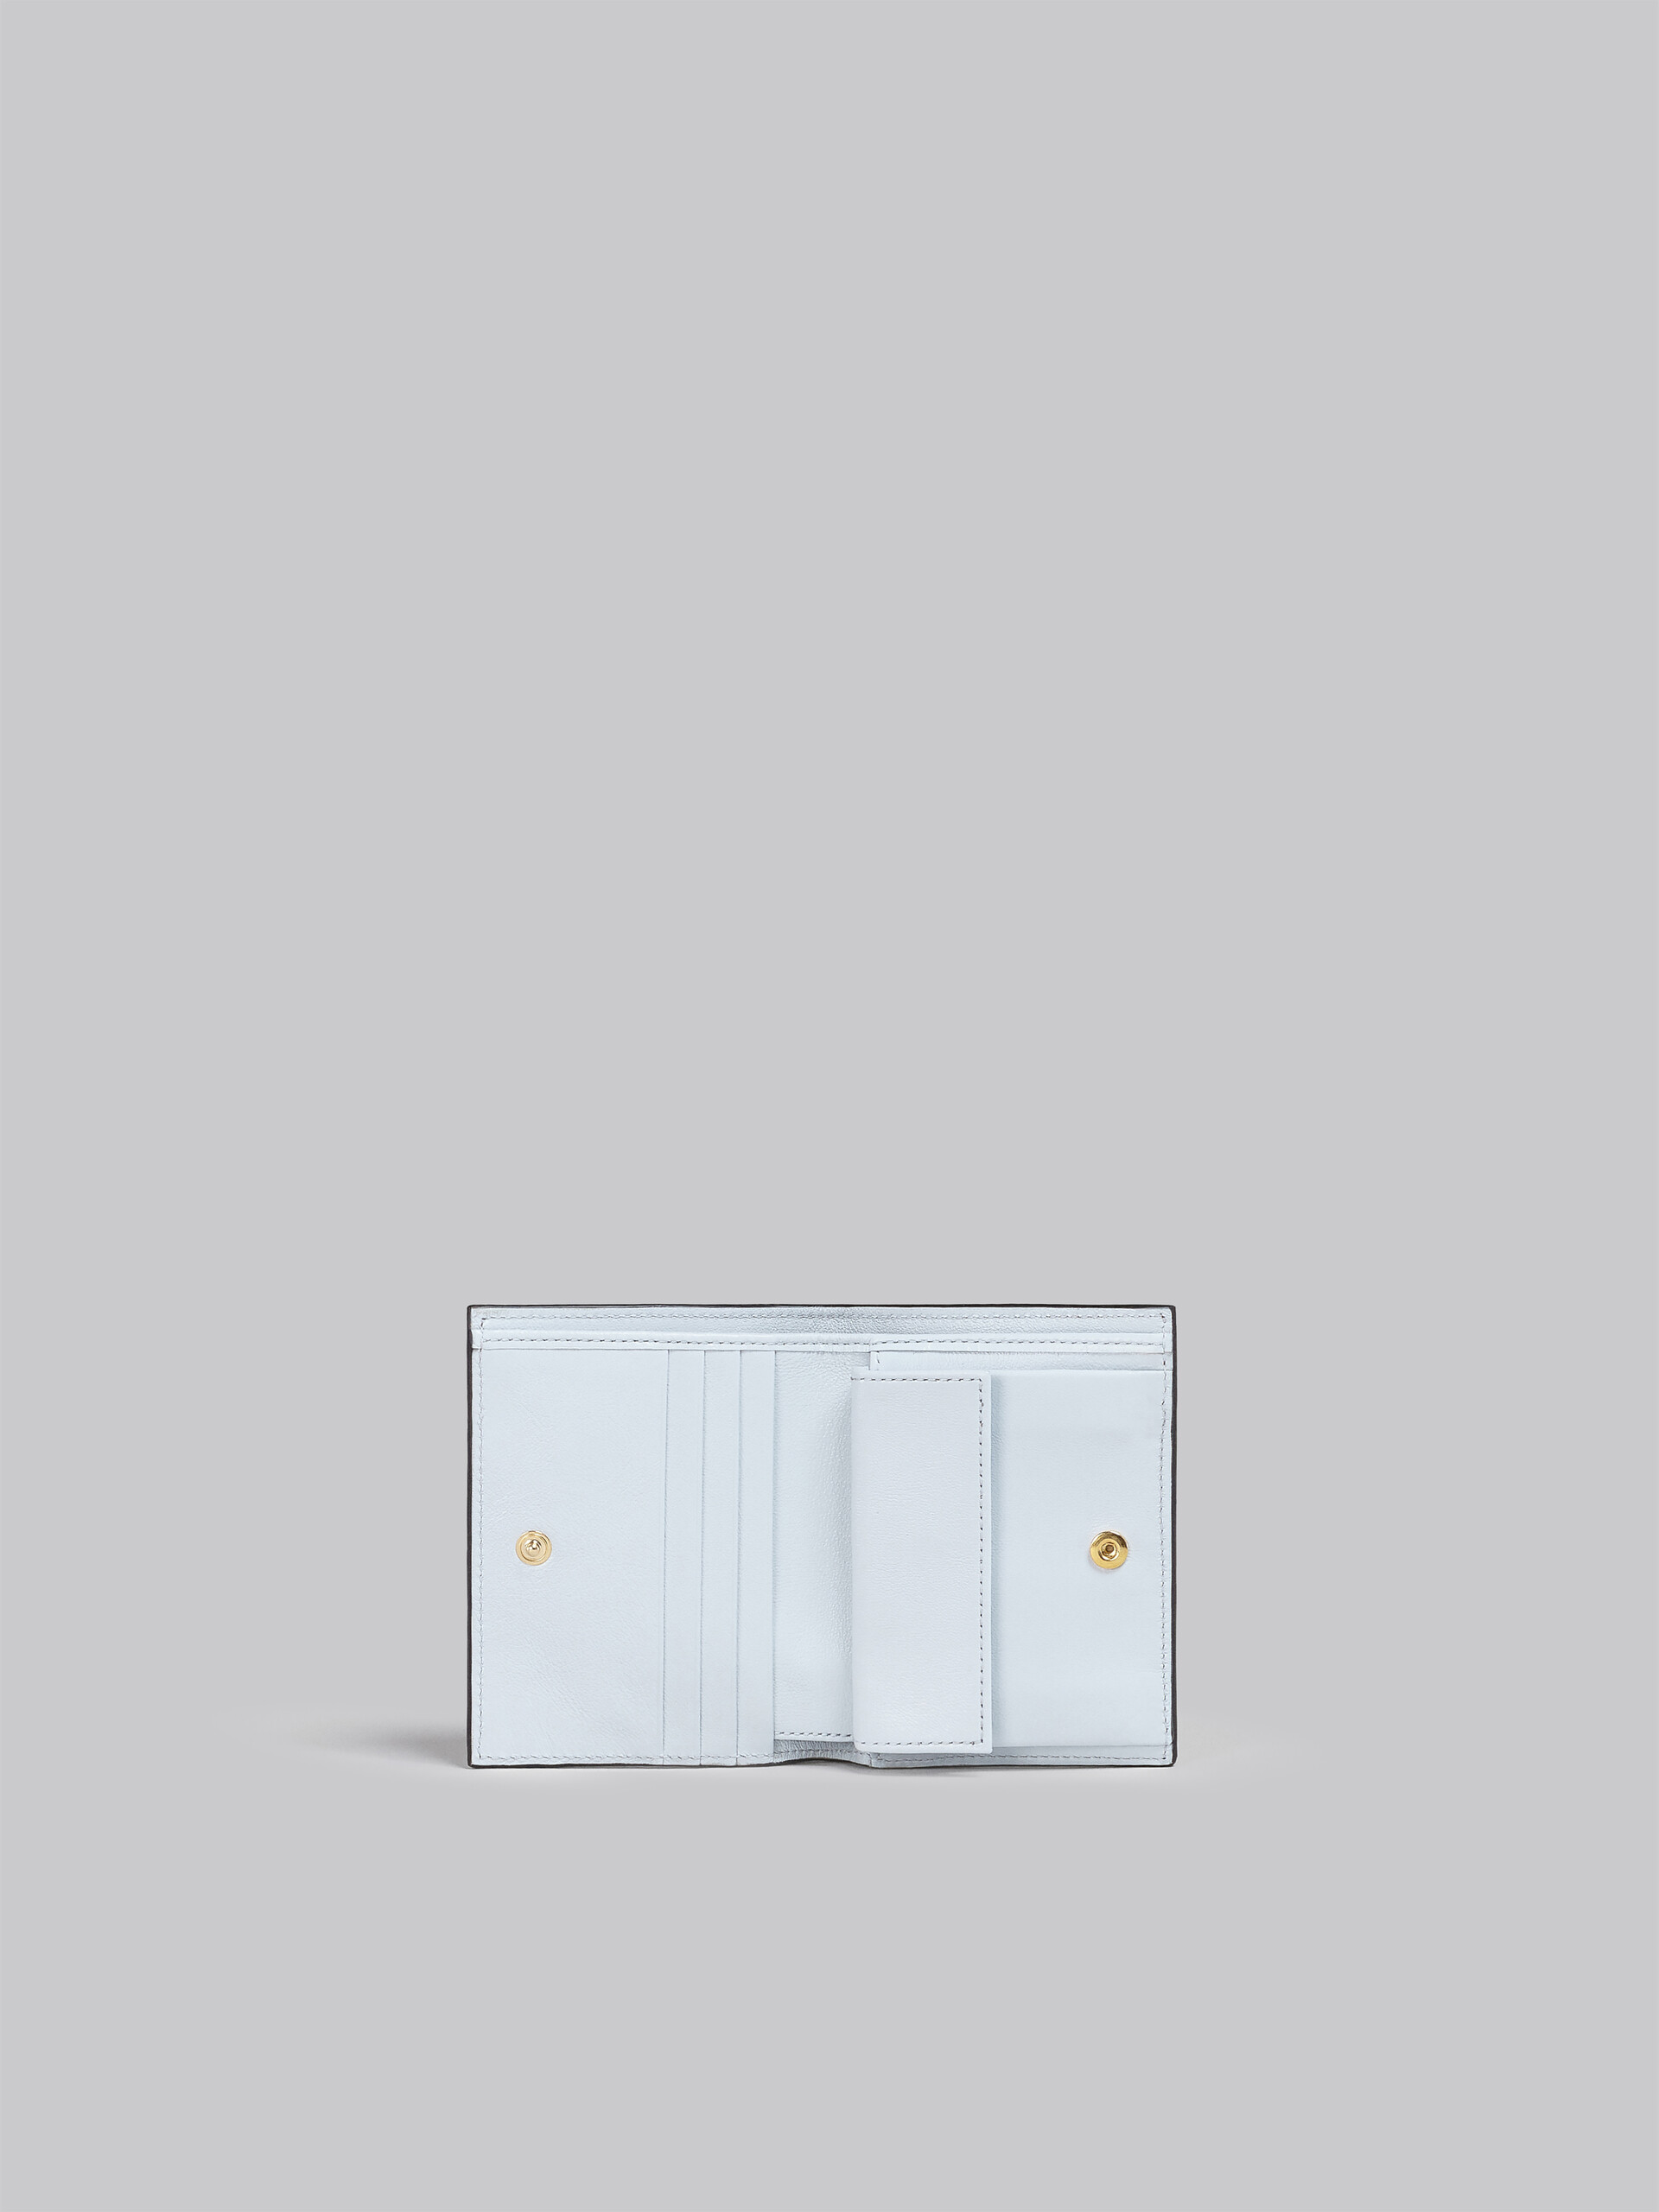 Zweifache Faltbrieftasche aus Leder in Grau und Schwarz - Brieftaschen - Image 2